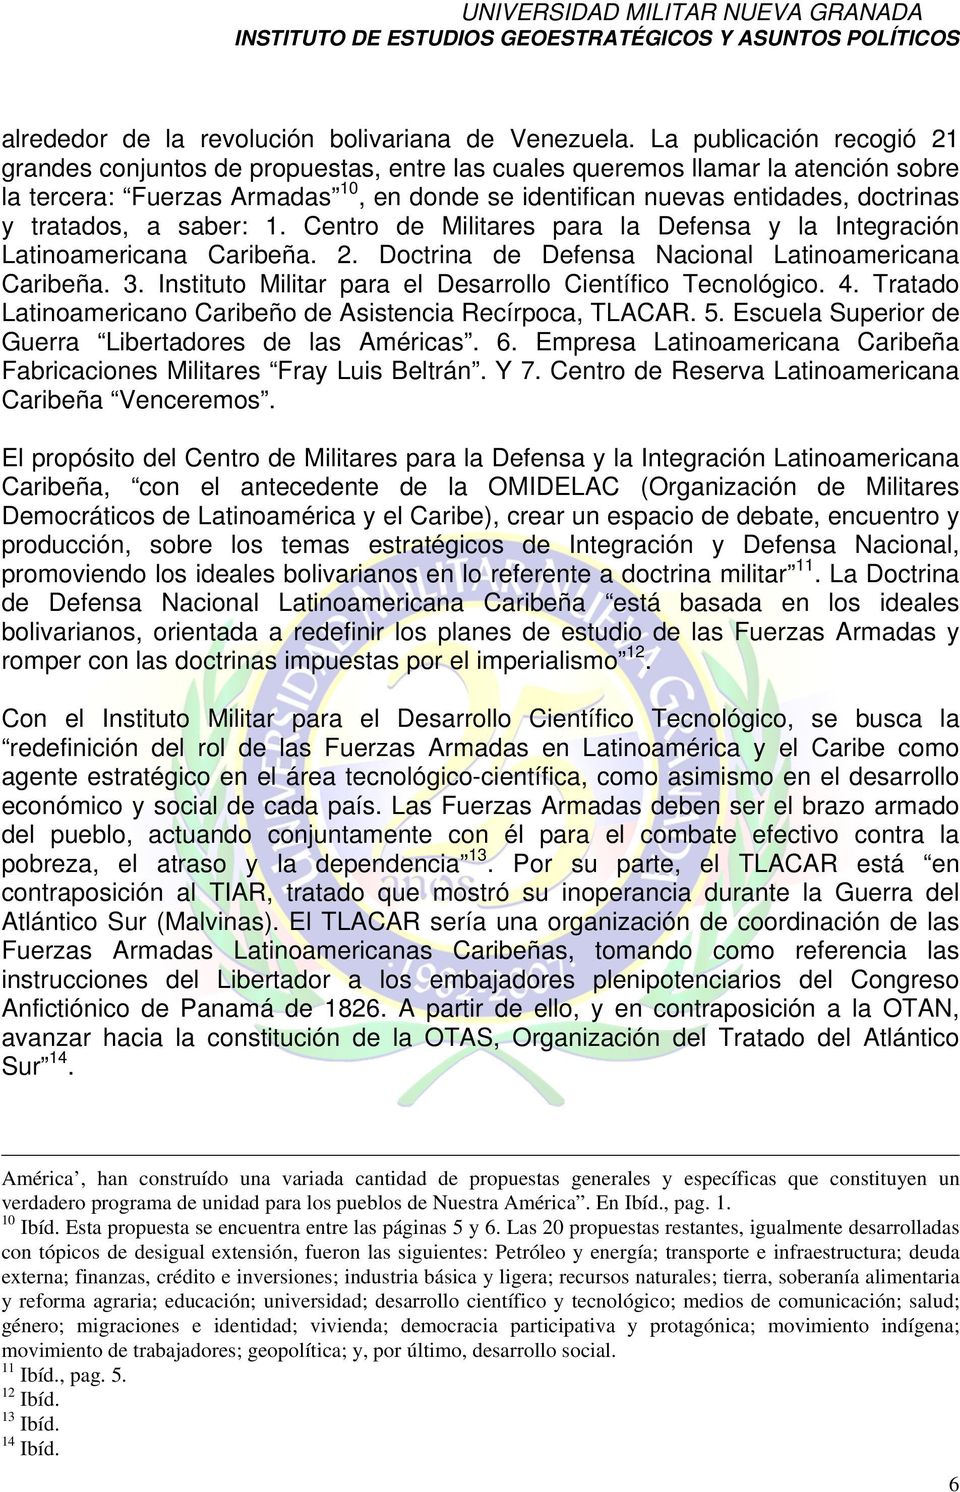 tratados, a saber: 1. Centro de Militares para la Defensa y la Integración Latinoamericana Caribeña. 2. Doctrina de Defensa Nacional Latinoamericana Caribeña. 3.